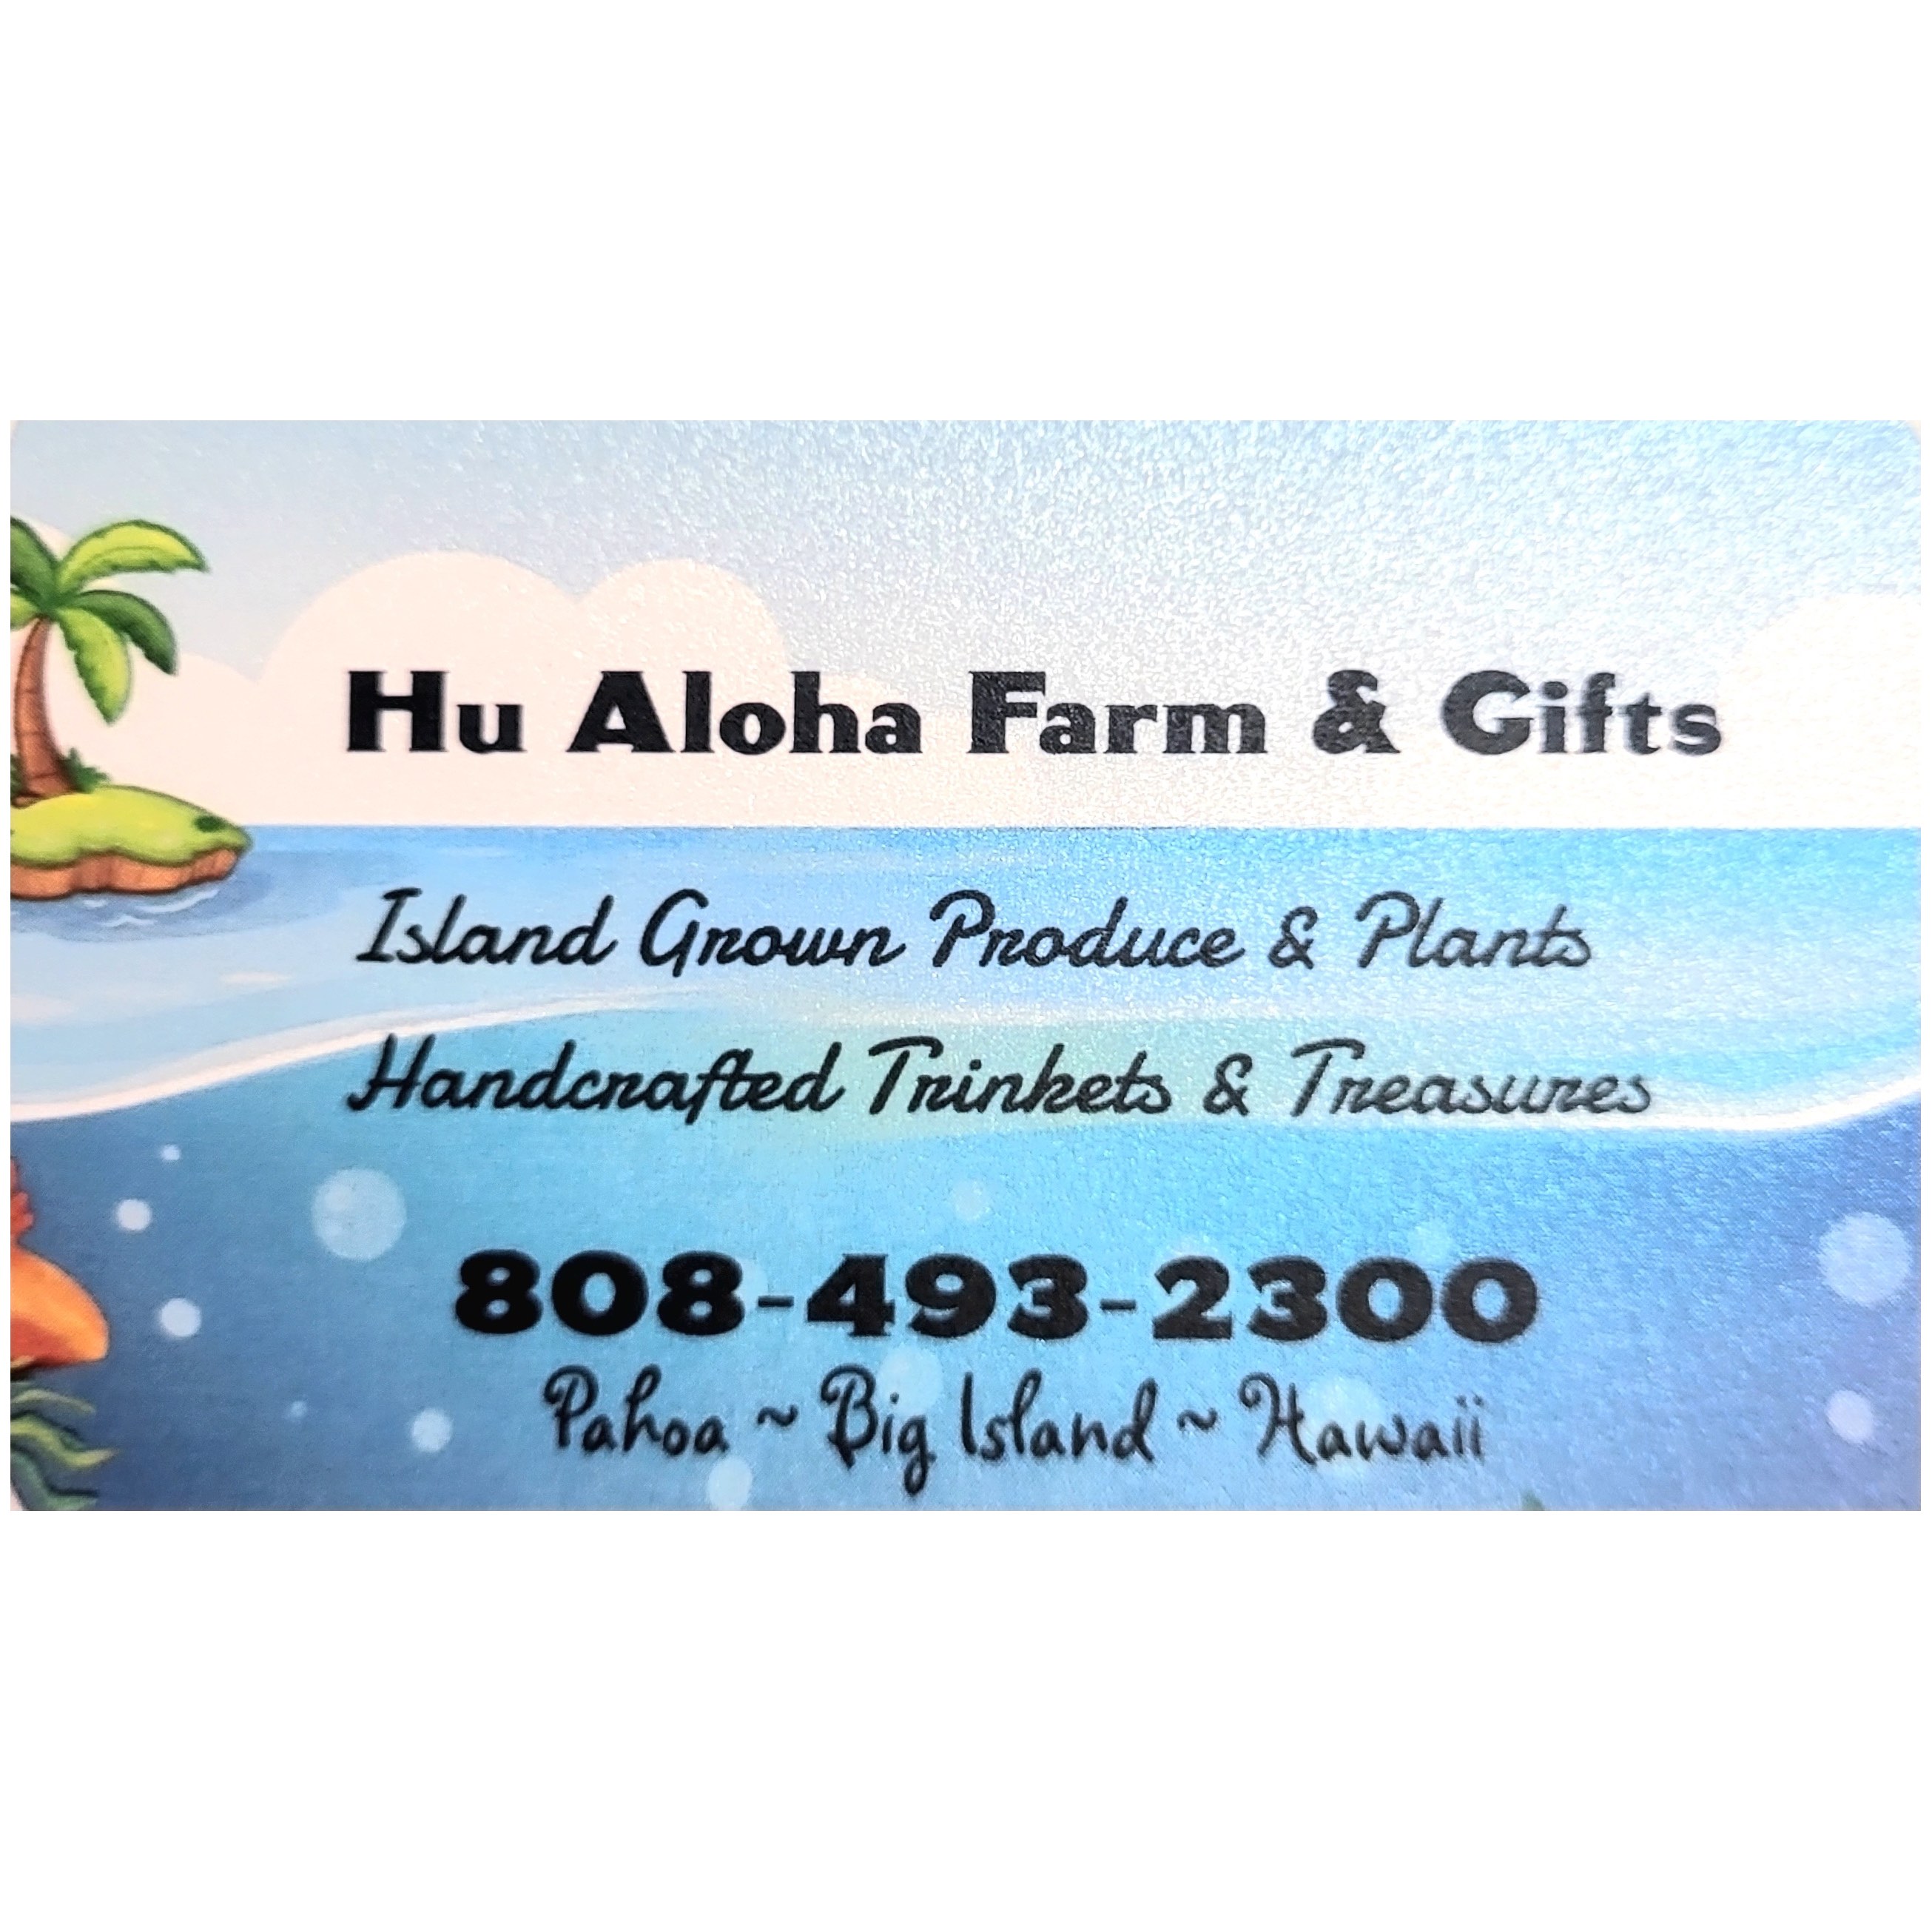 Hu Aloha Farm & Gifts